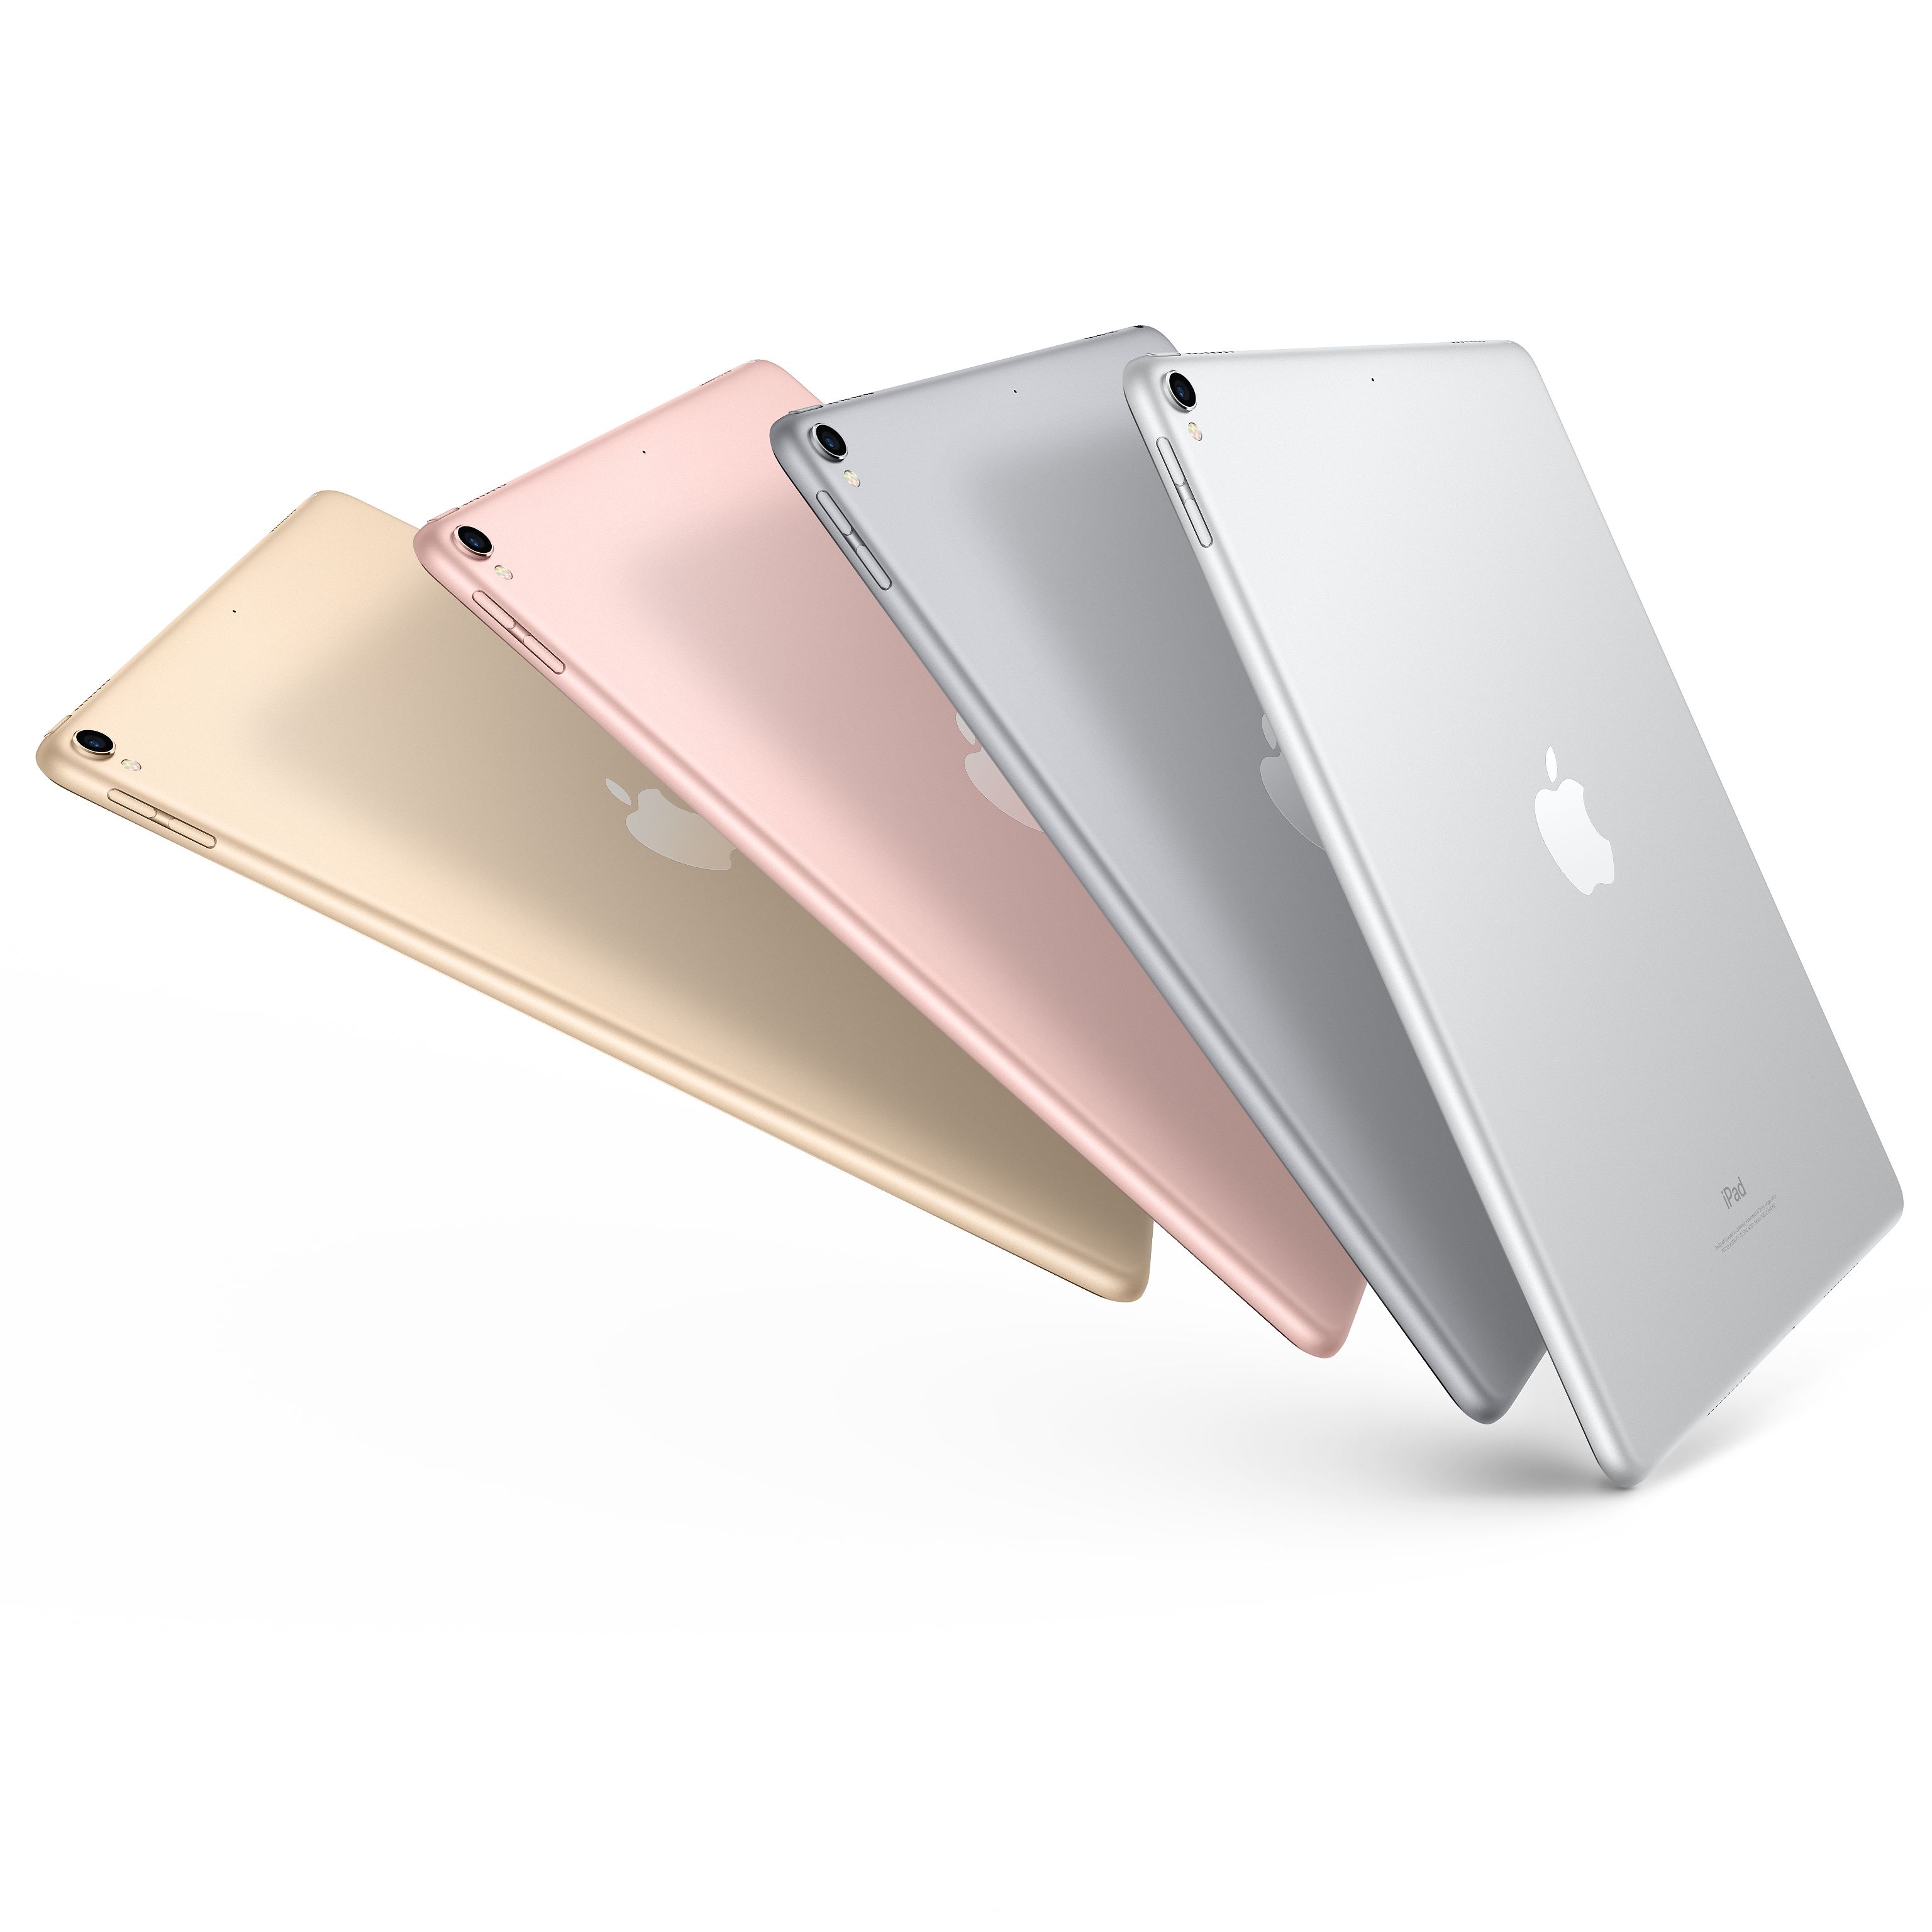 苹果(Apple) iPad pro 新款10.5英寸平板电脑 银色64GB WLAN版MQDW2CH/A